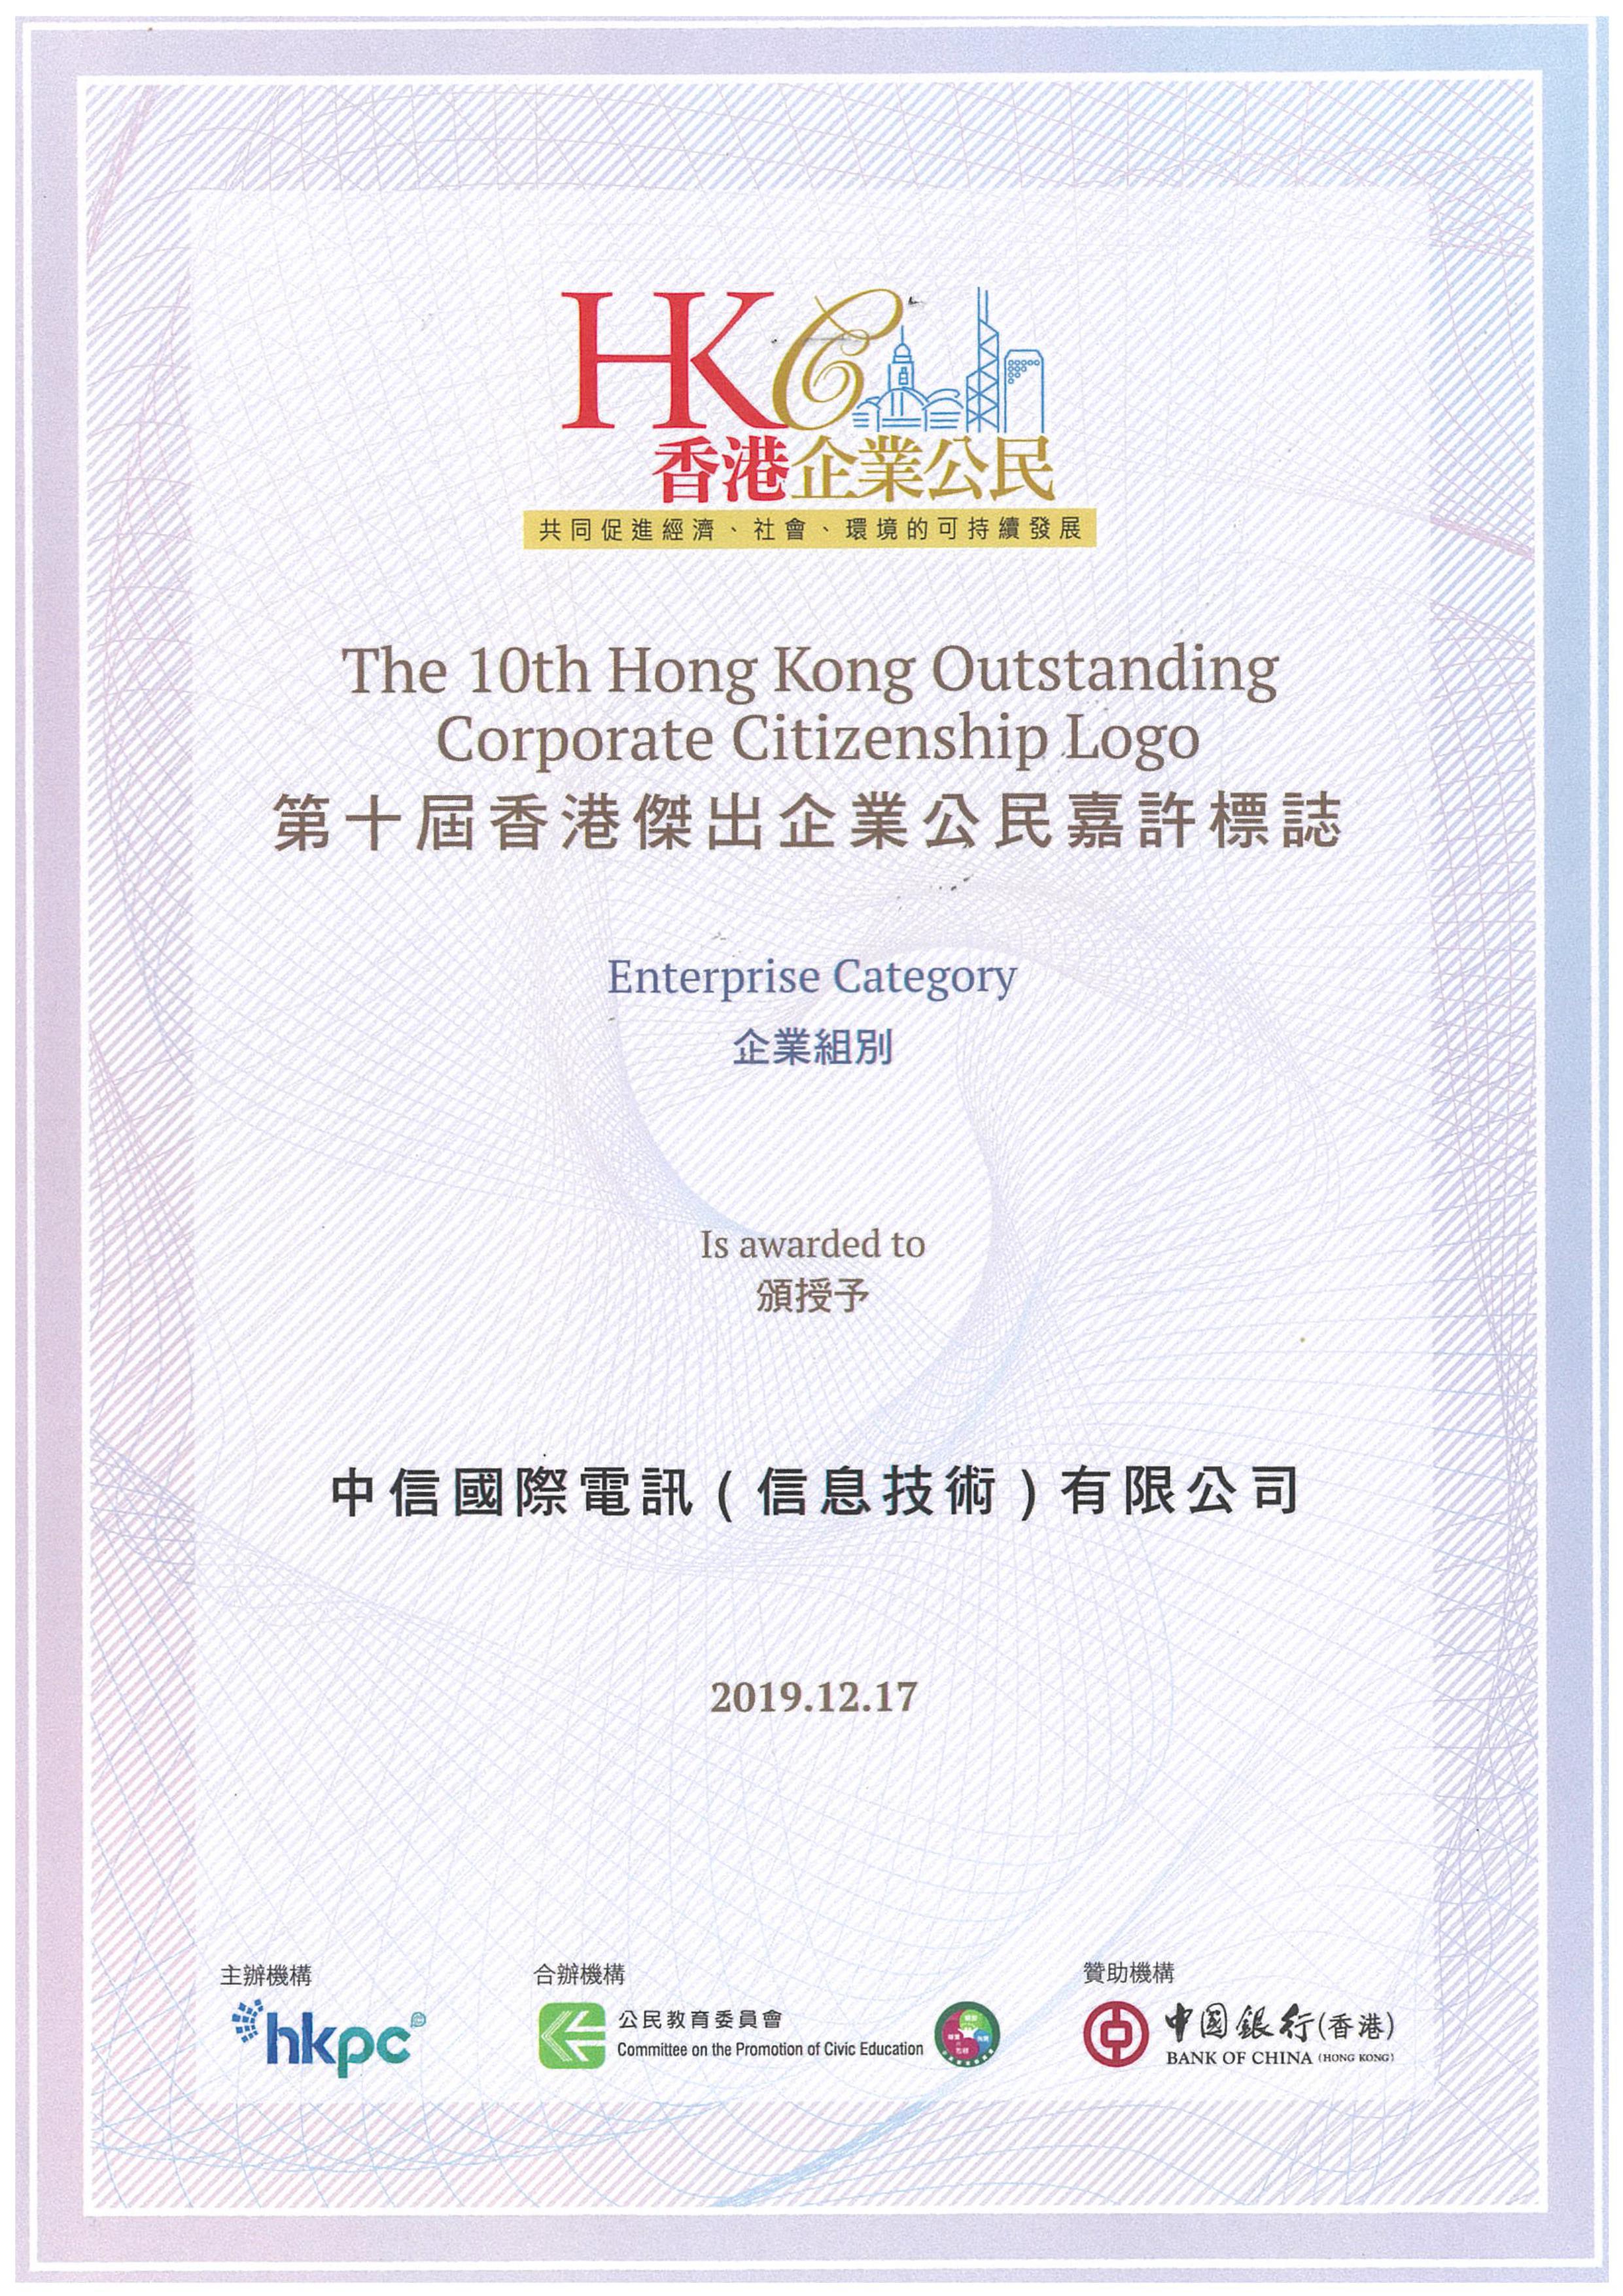 第十届香港杰出企业公民嘉许标志–企业组別